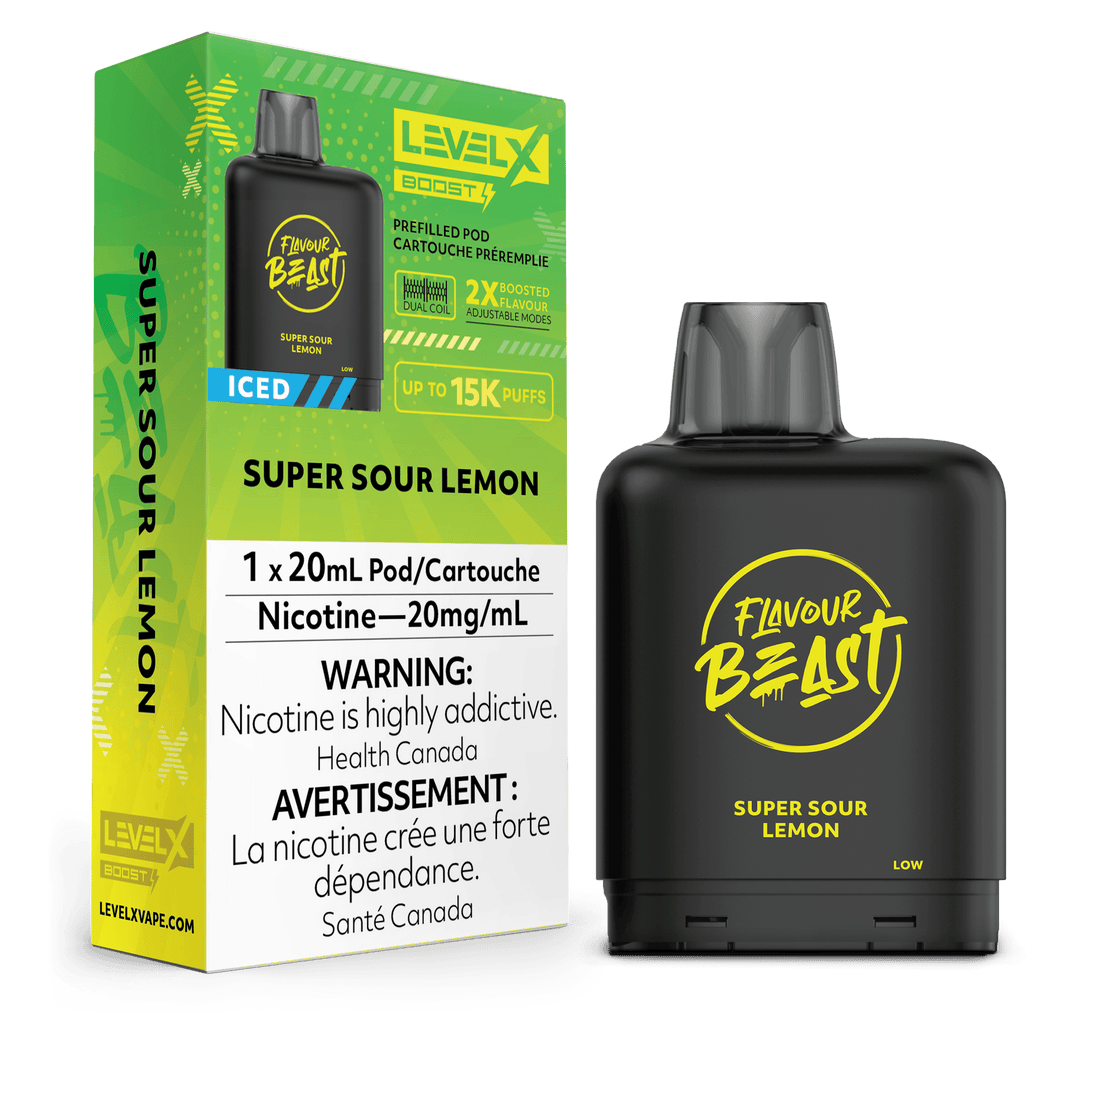 Level X Boost Flavour Beast - Super Sour Lemon Iced - Vapor Shoppe